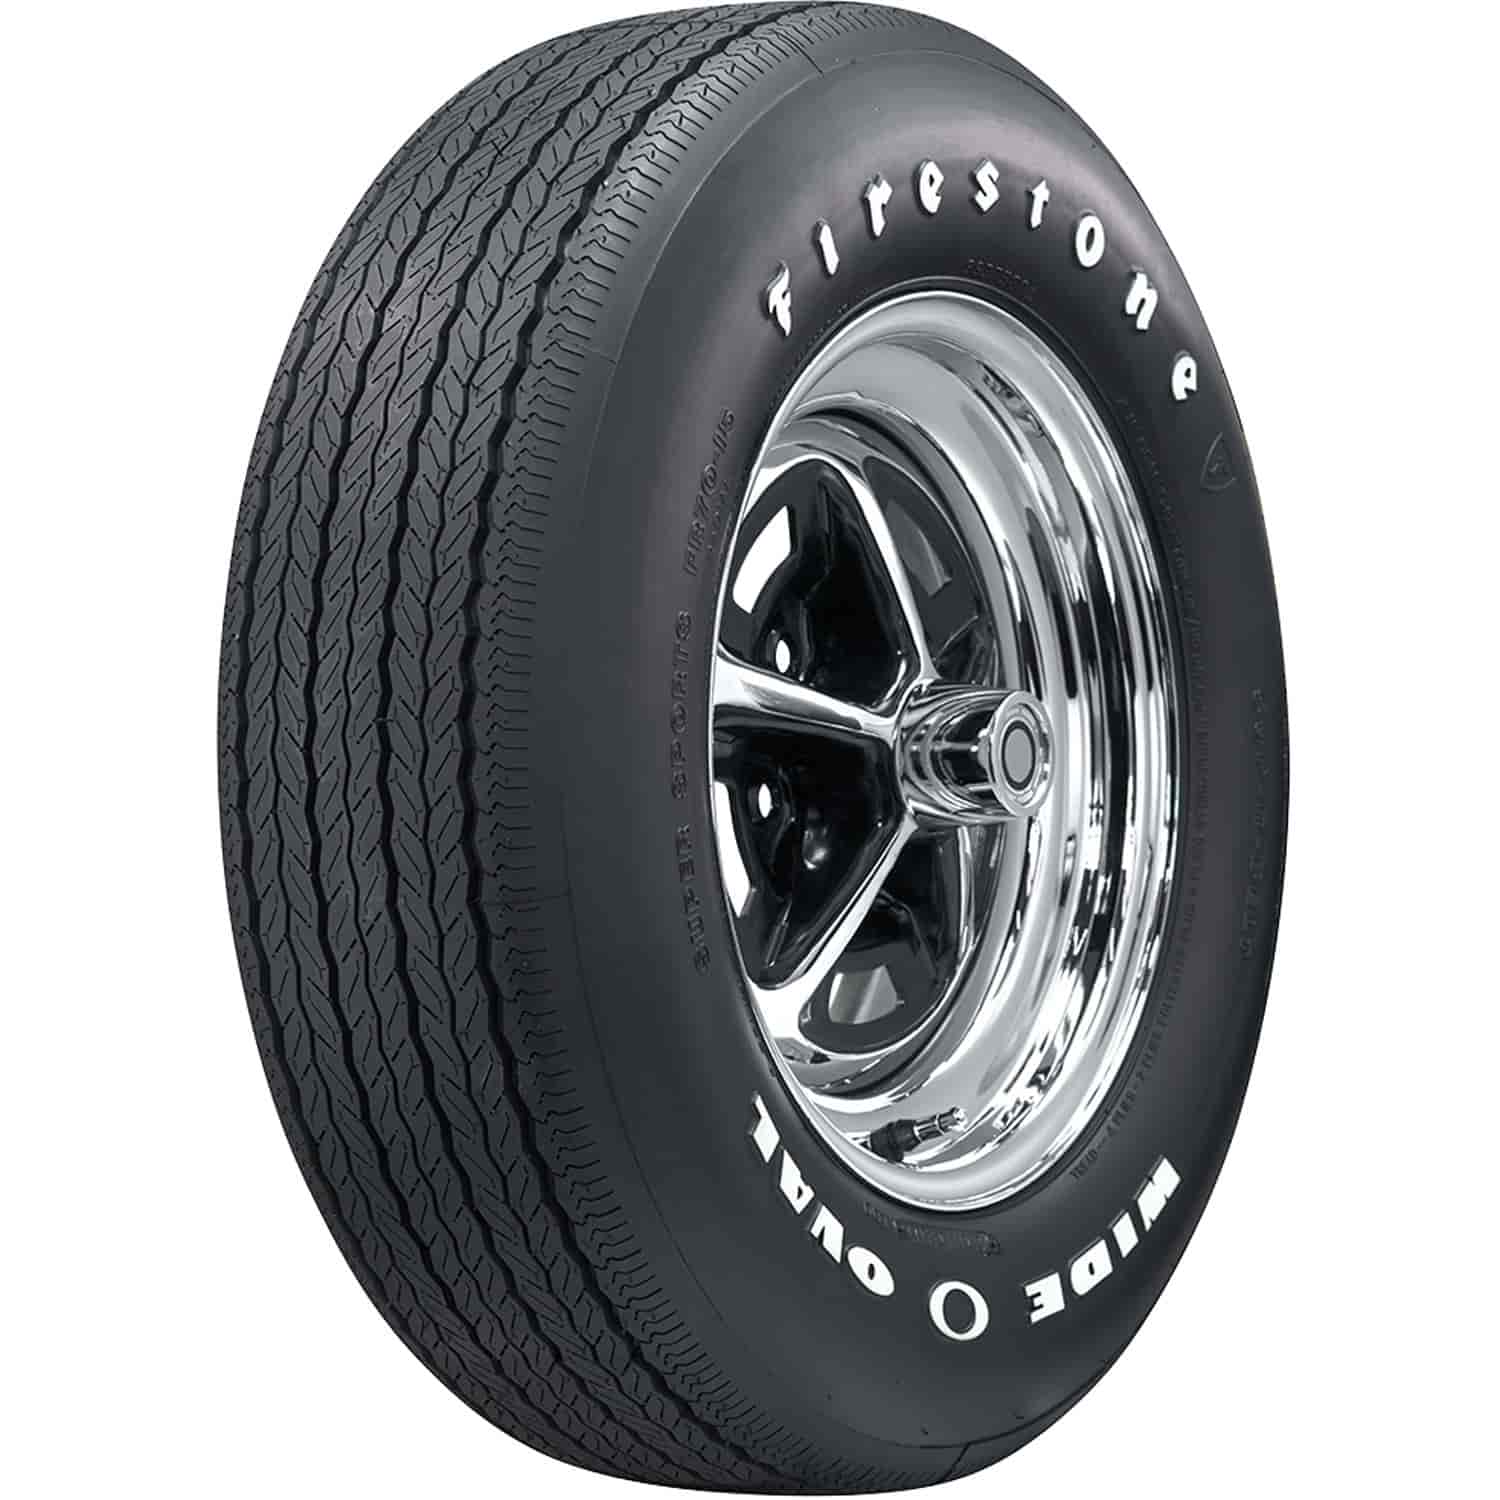 Firestone Wide Oval Radial Tire FR60-15